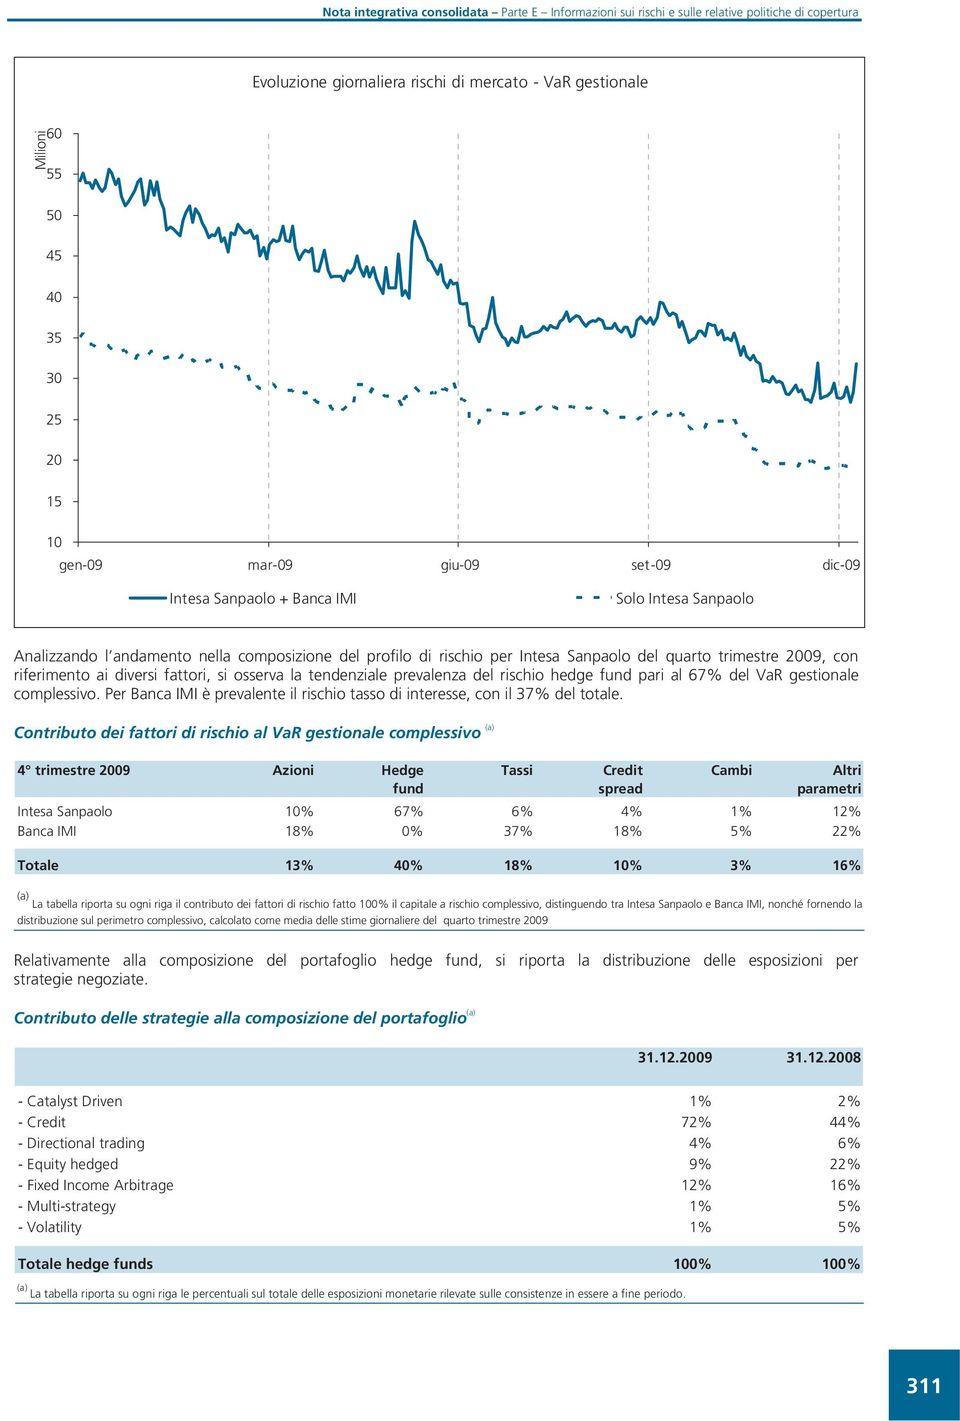 al 67% del VaR gestionale complessivo. Per Banca IMI è prevalente il rischio tasso di interesse, con il 37% del totale.